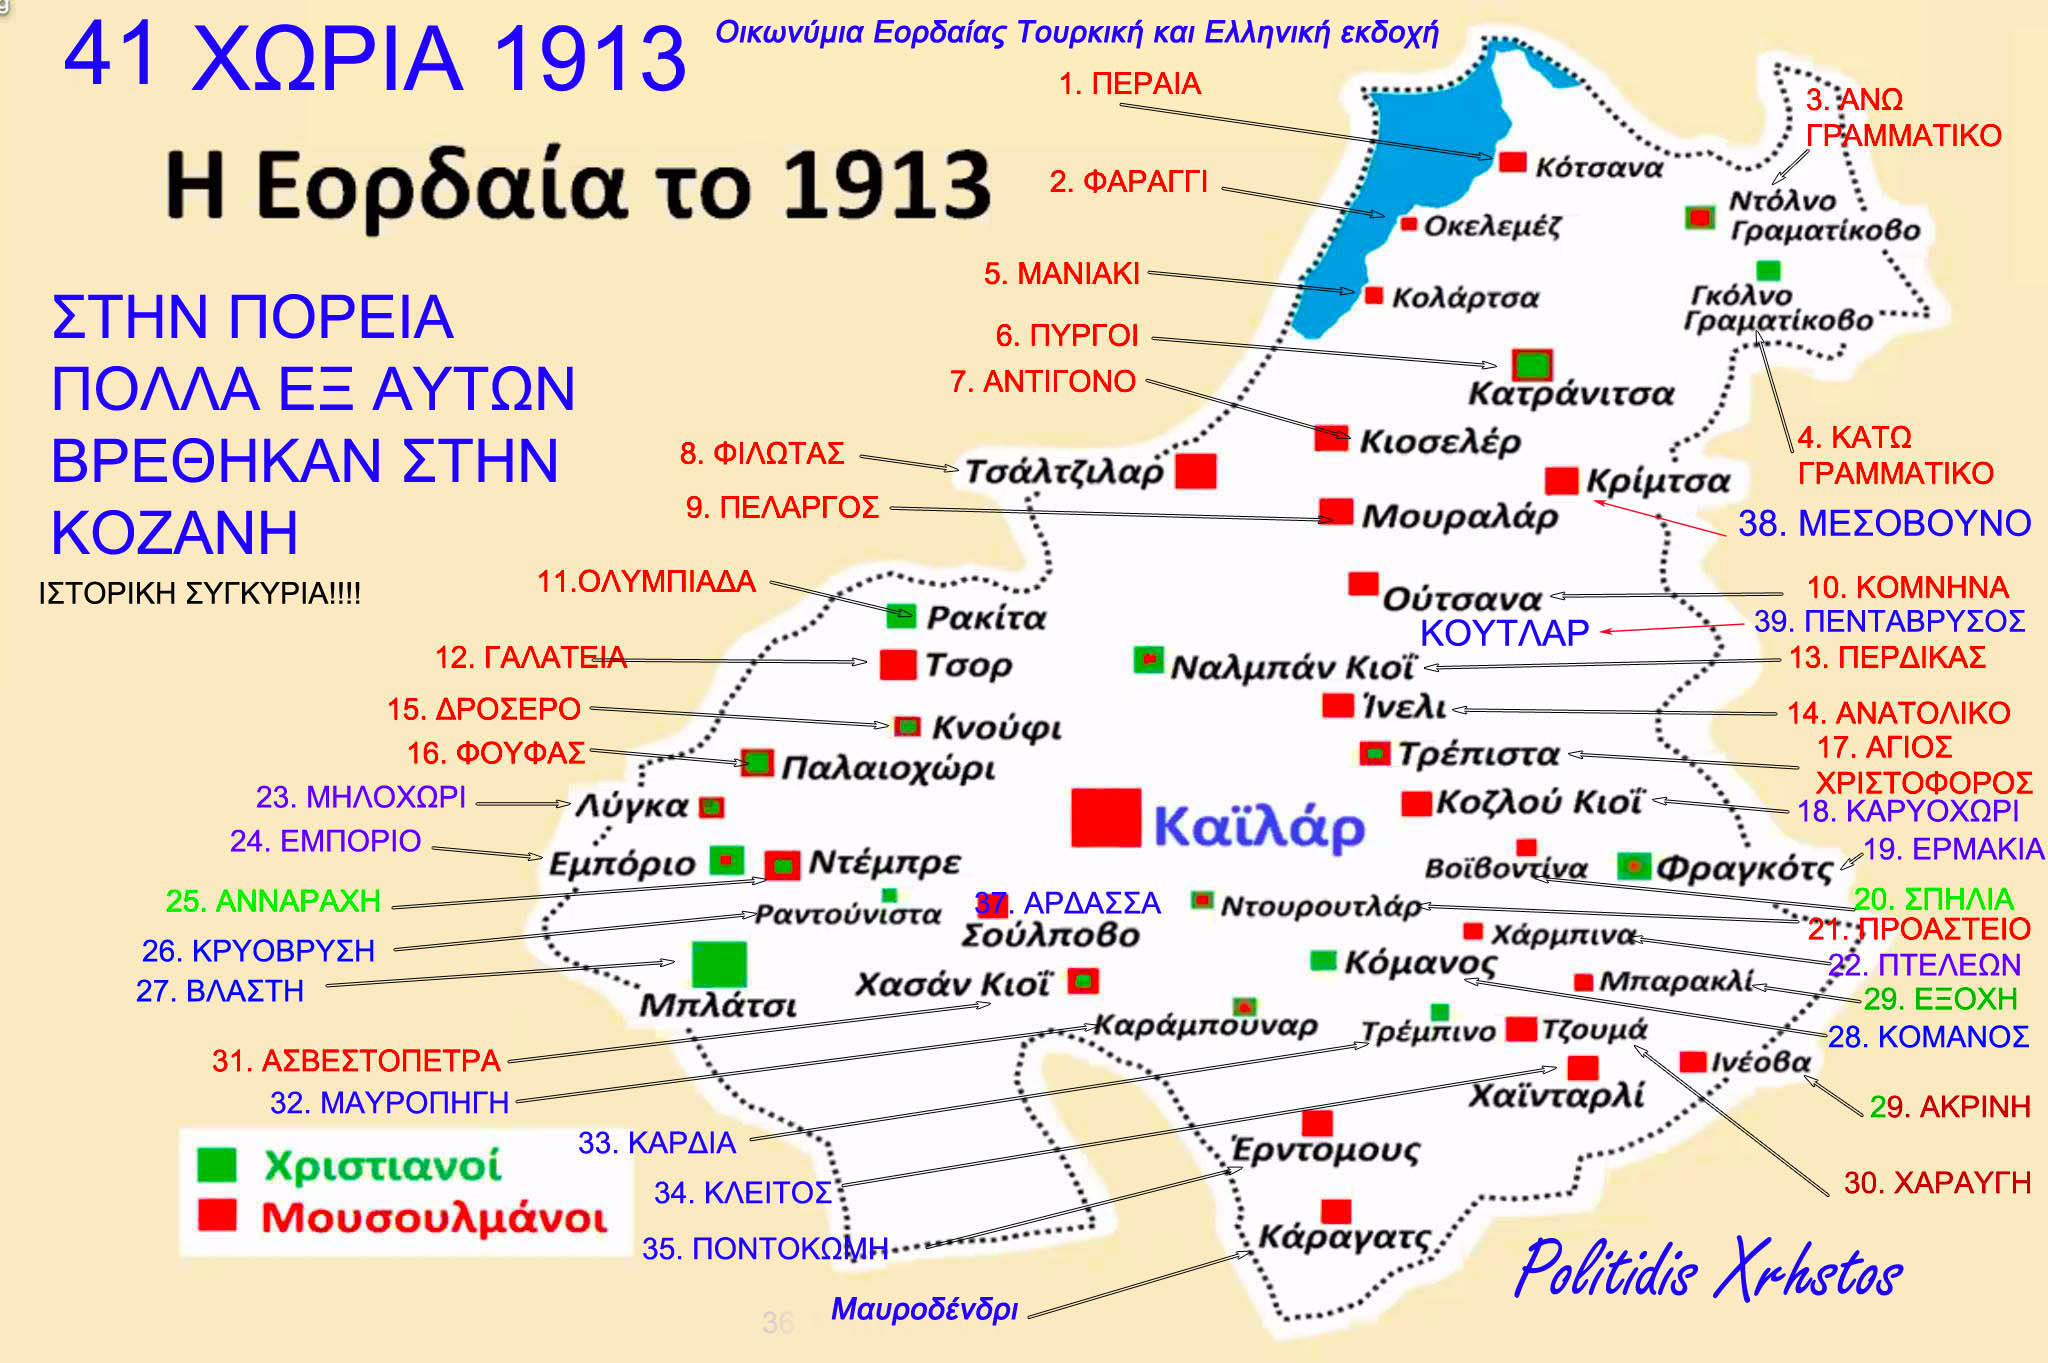 Εορδαία 1913 είχε 41 Χωριά. Στην πορεία πολλά εξ αυτών βέθηκαν στον Δήμο Κοζάνης (προσφυγικός Πληθυσμός) και ορισμένα σε όμορους Νομούς